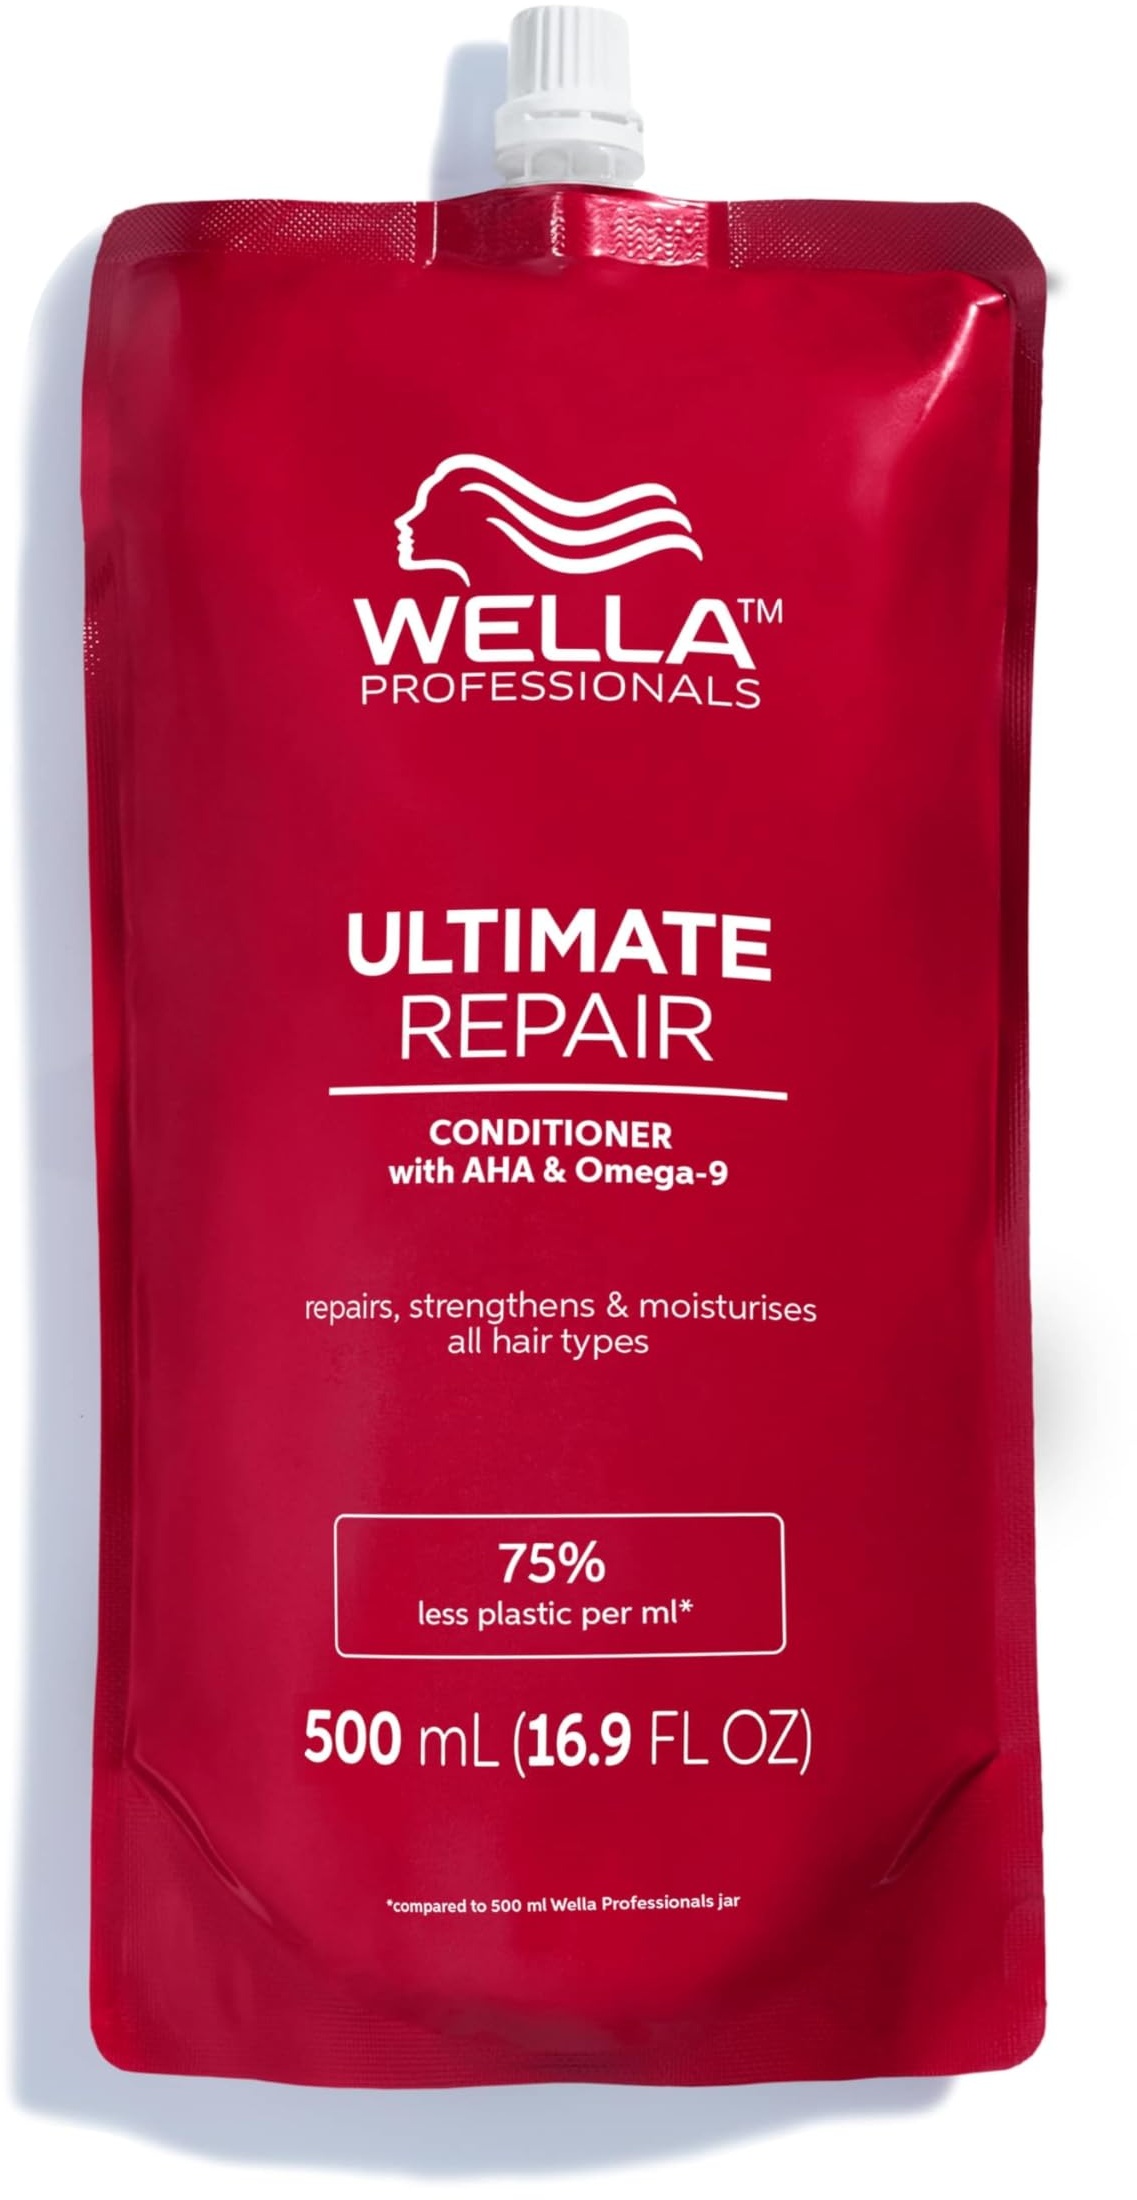 Wella Professionals Ultimate Repair tiefenwirksamer Conditioner – reparierende Haarspülung mit AHA und Omega 9 – feuchtigkeitsspendende Spülung für strapaziertes Haar – 500 ml Beutel